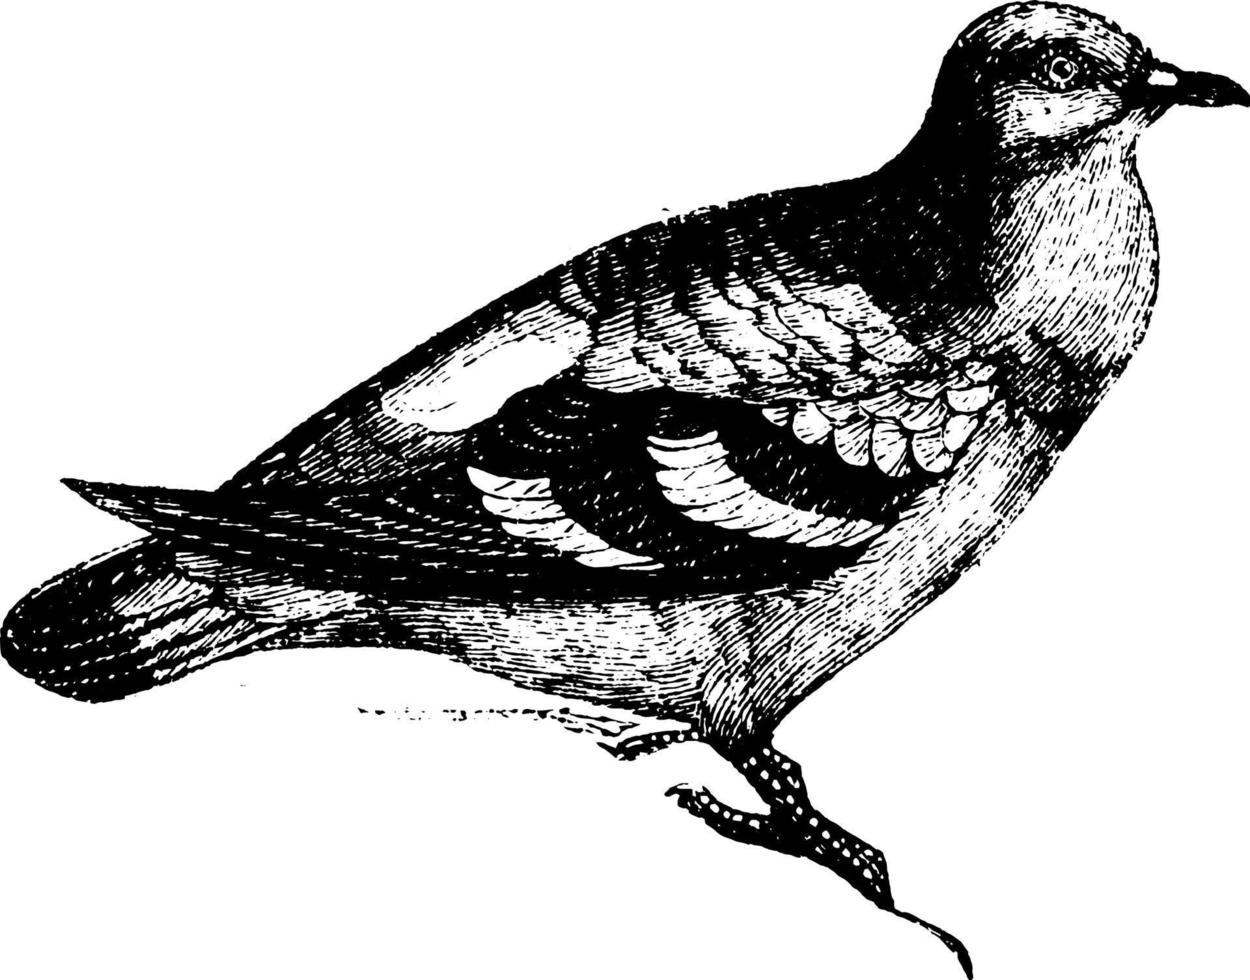 Wood Pigeon, vintage illustration. vector